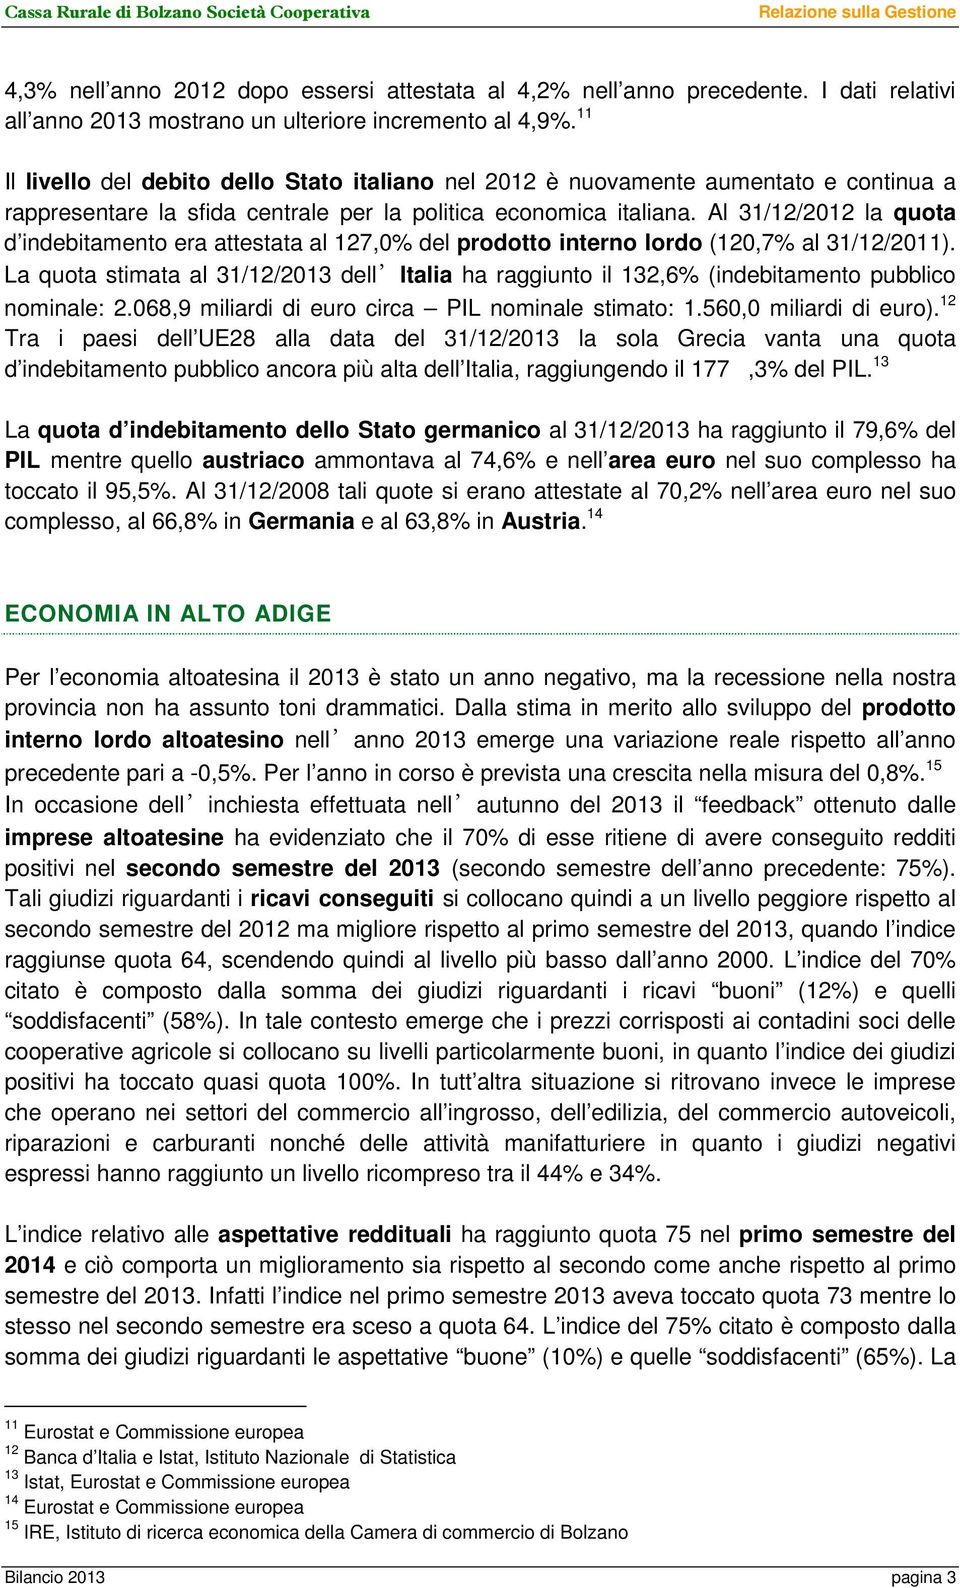 11 Il livello del debito dello Stato italiano nel 2012 è nuovamente aumentato e continua a rappresentare la sfida centrale per la politica economica italiana.